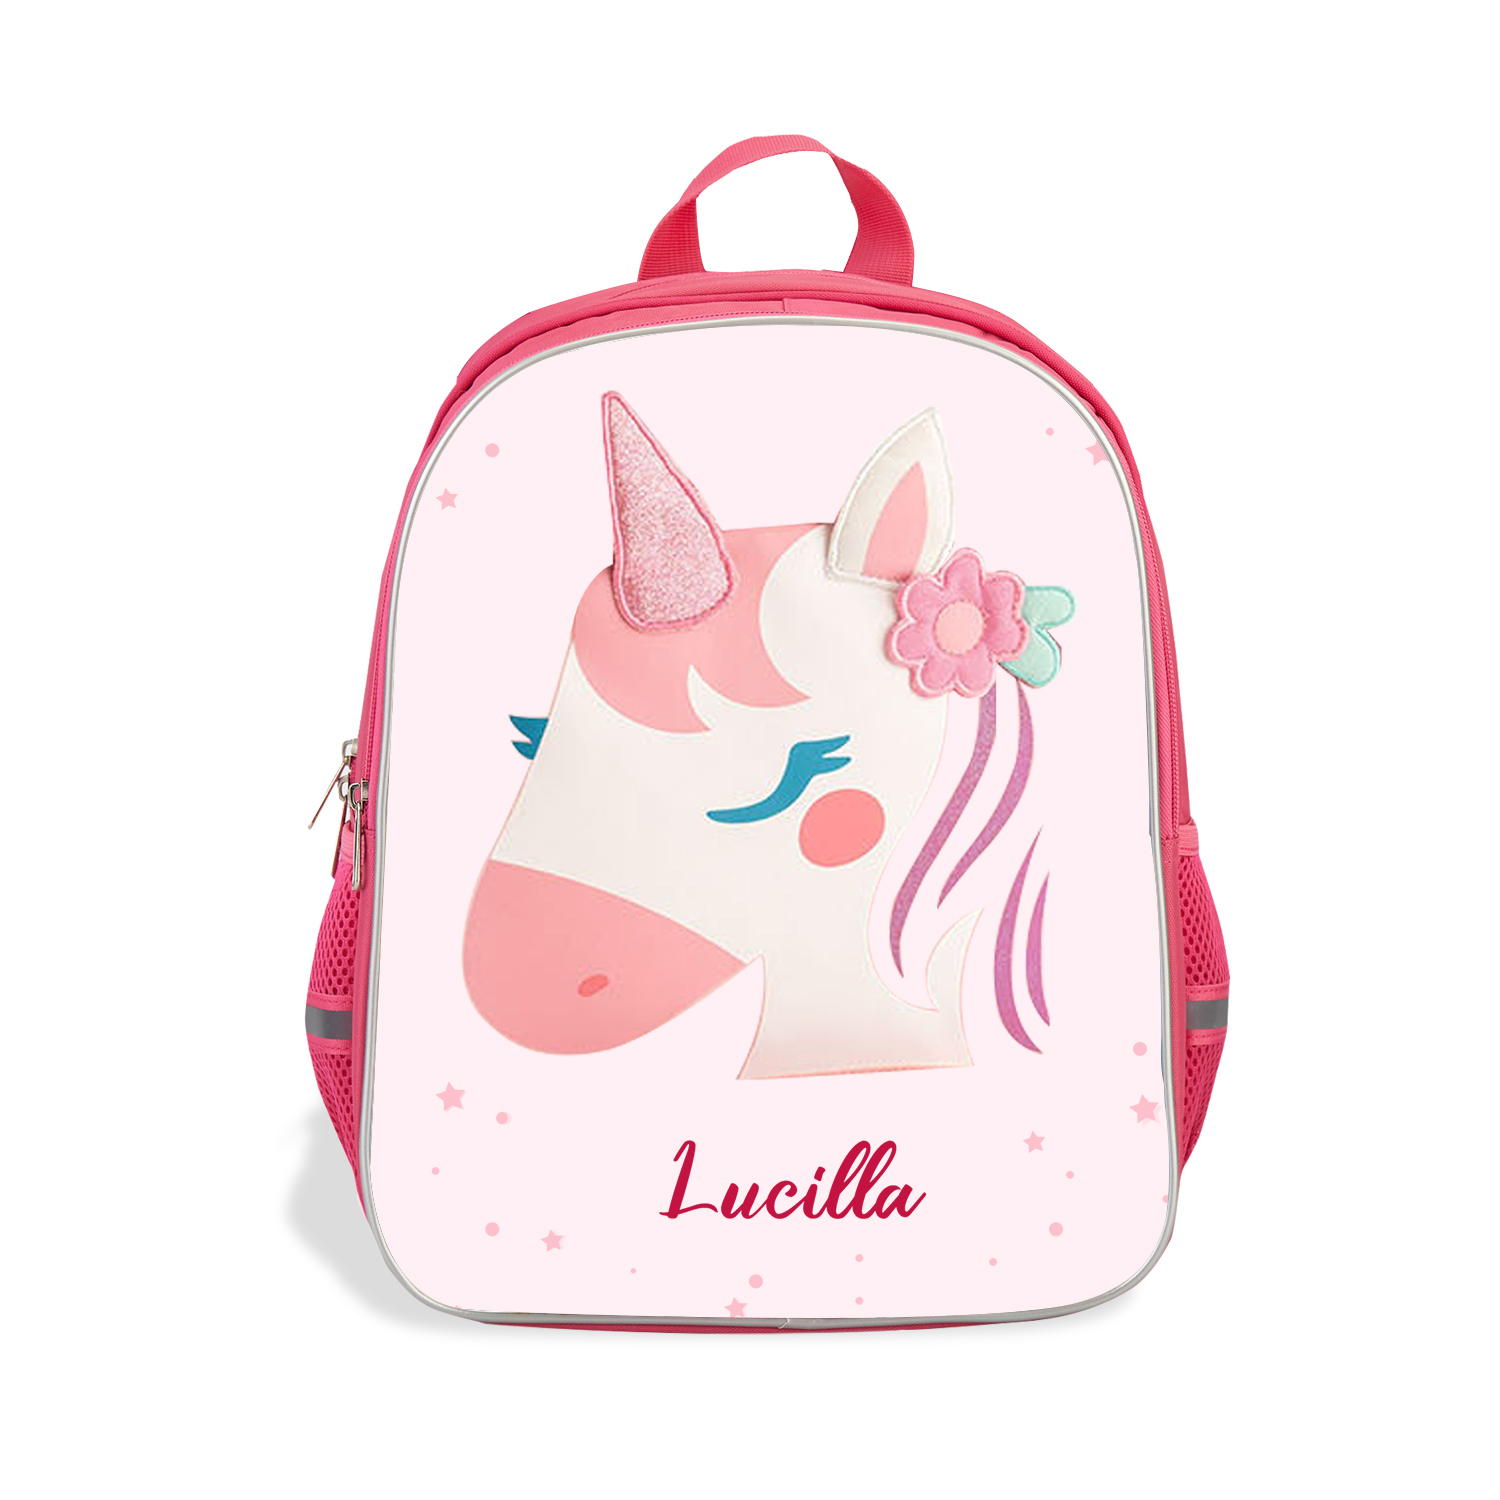 Girls Backpack for School Custom Name Unicorn Backpack Kids Travel Day Bag